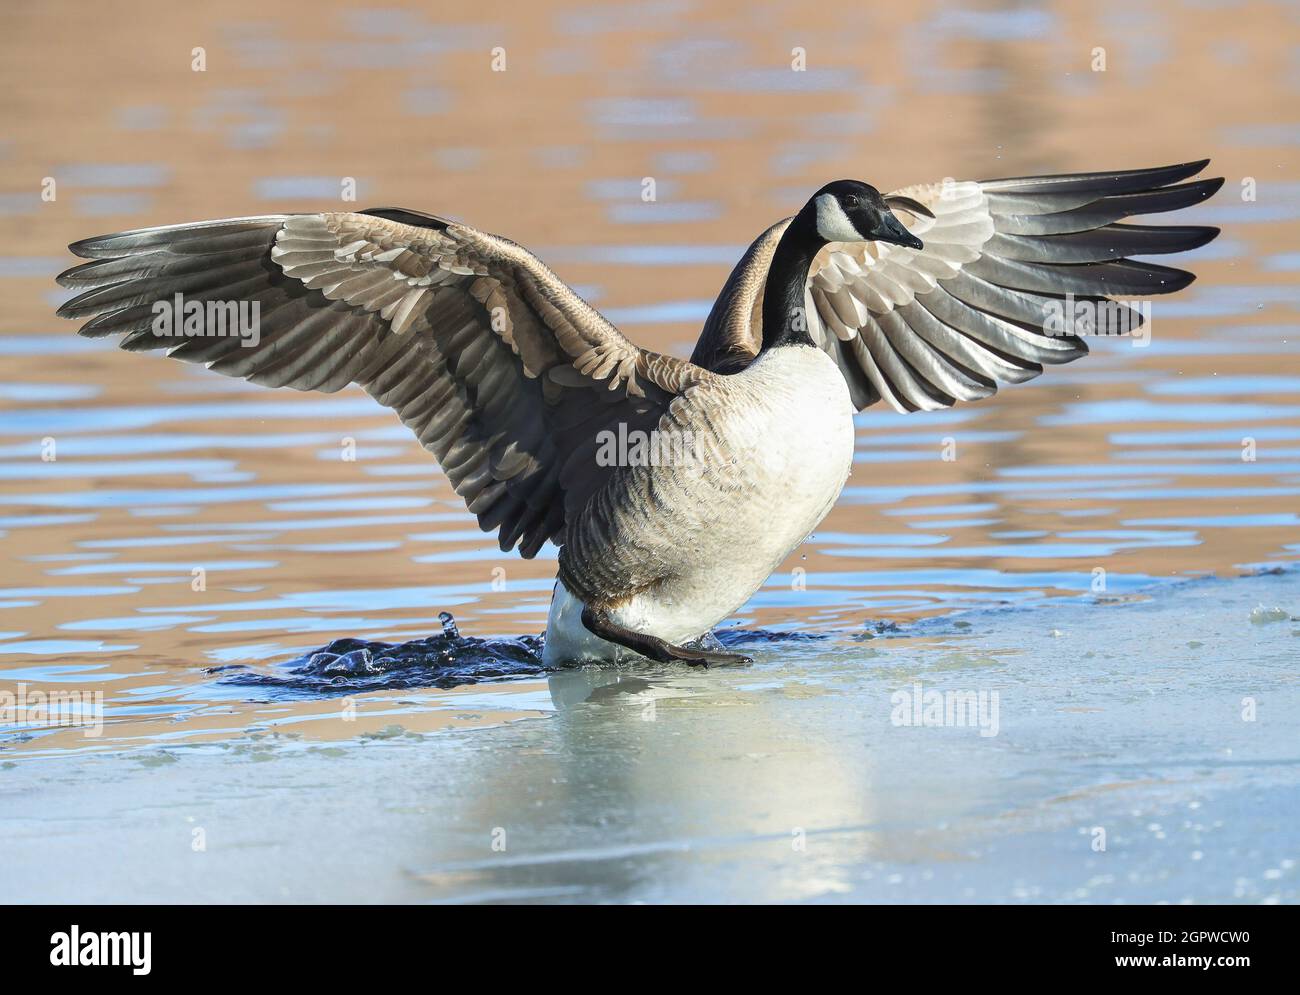 Une OIE canadienne fixe un pied sur la glace lorsqu'elle émerge d'un lac d'hiver avec des ailes qui flotent. Banque D'Images